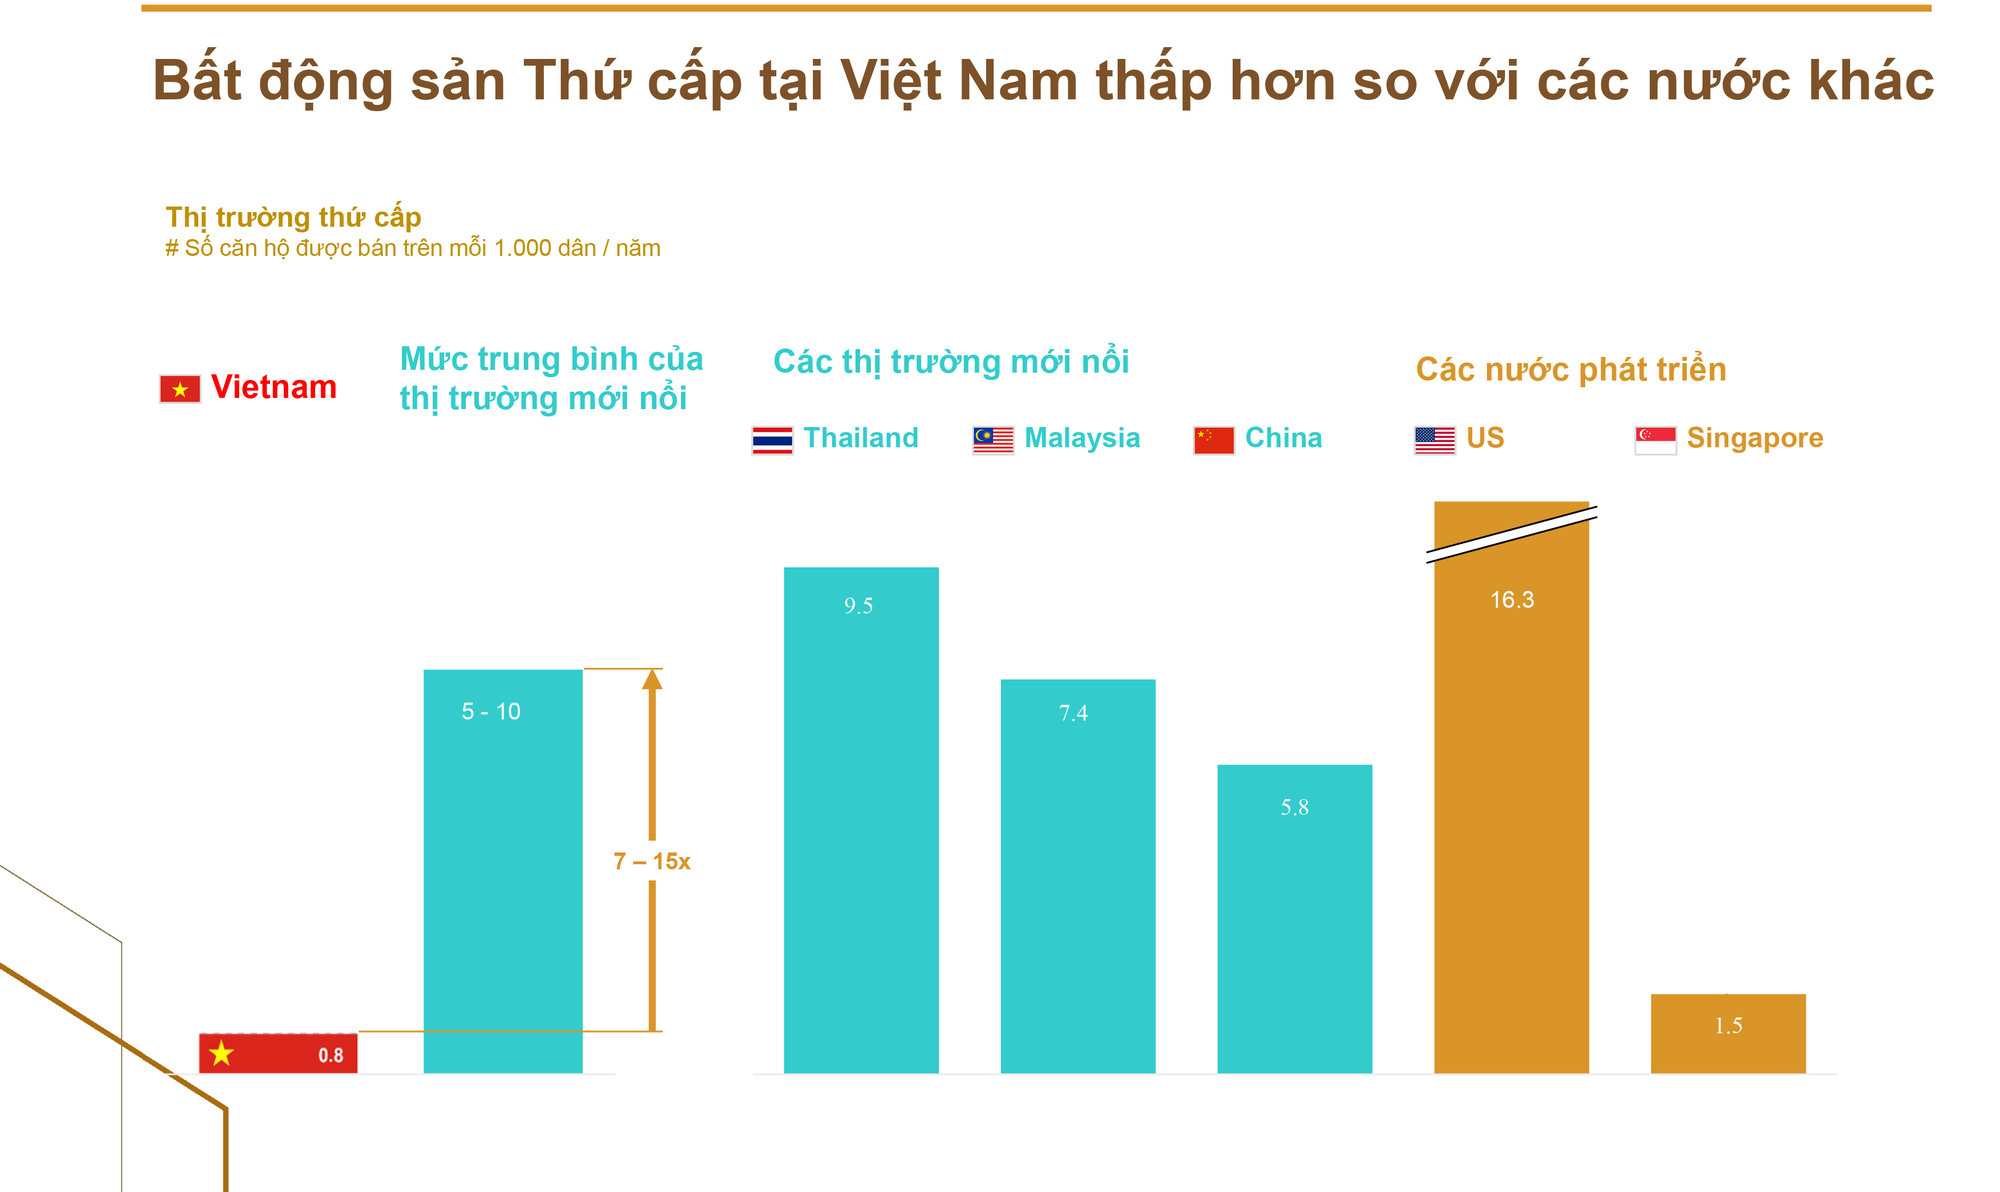 Bất động sản Thứ cấp tại Việt Nam thấp hơn so với các nước khác.